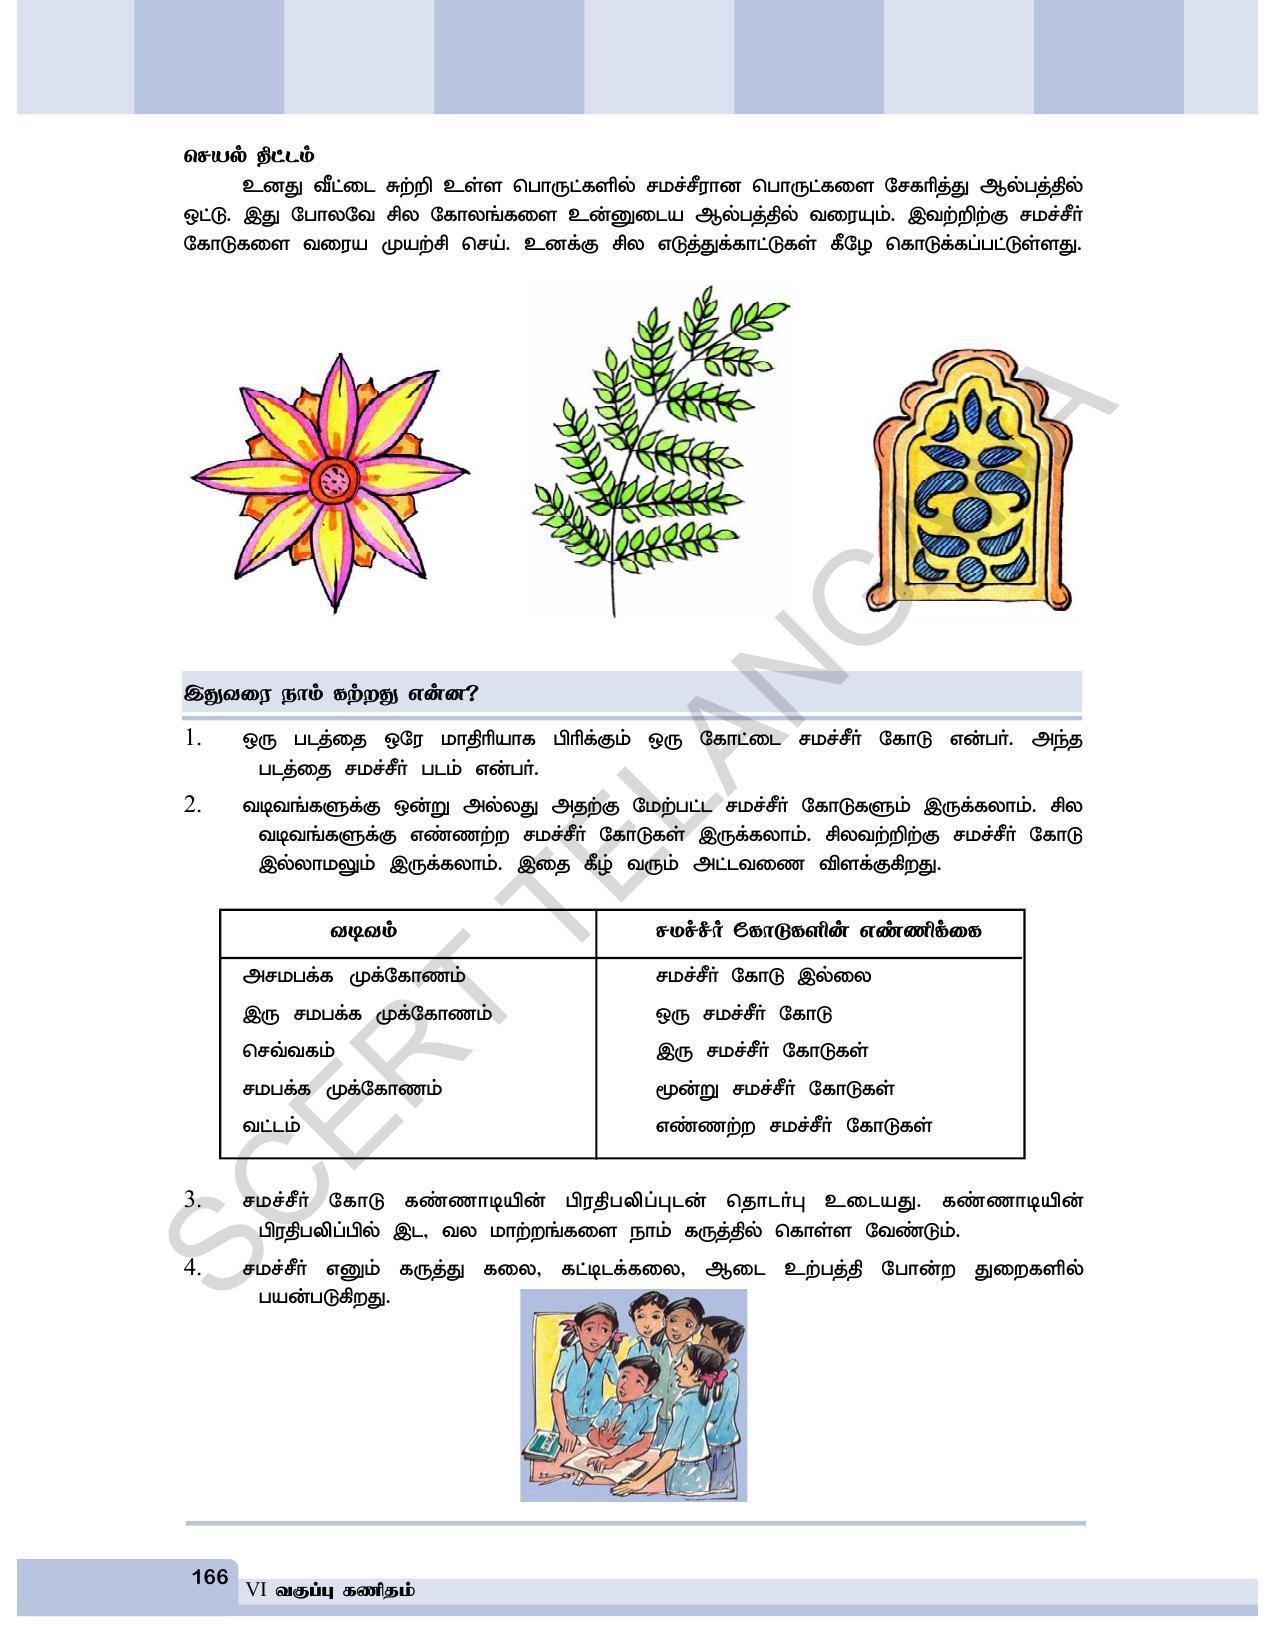 TS SCERT Class 6 Maths  (Tamil Medium) Text Book - Page 174